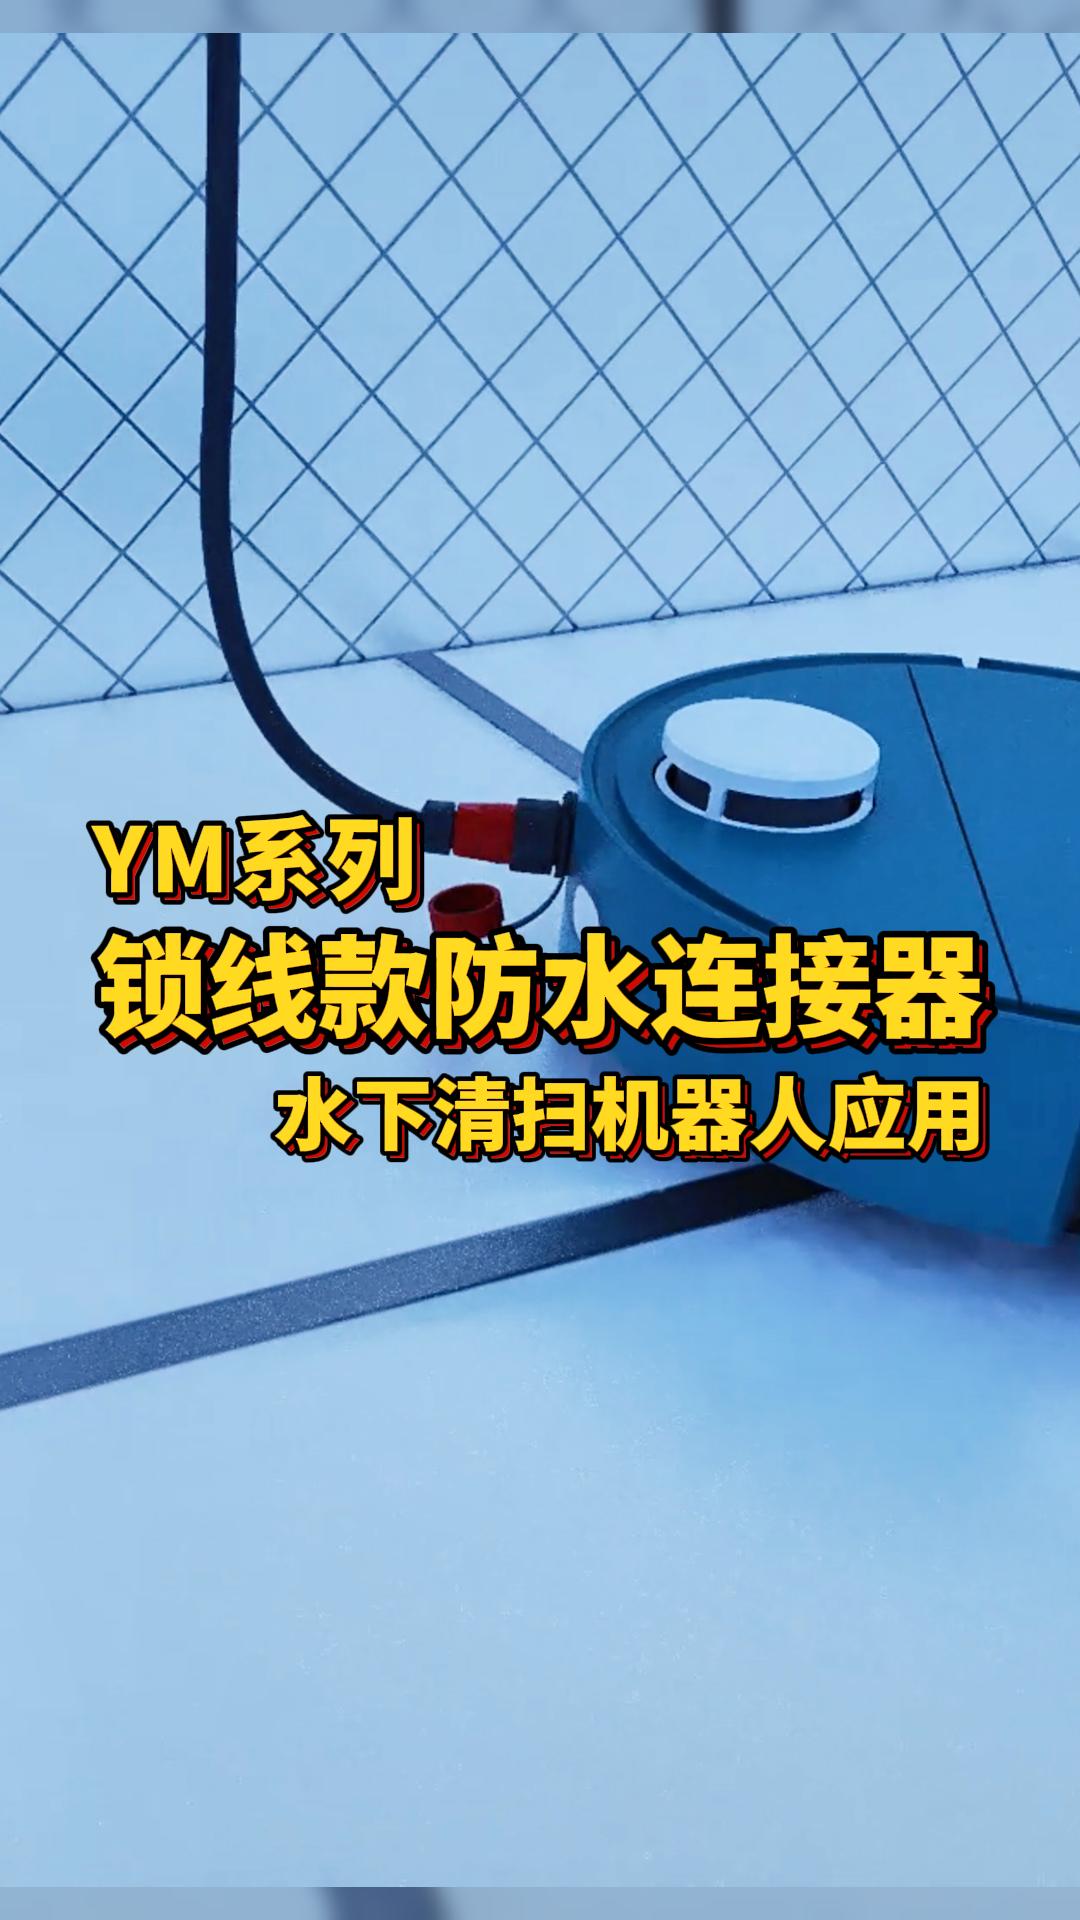 凌科電氣YM系列鎖線款防水連接器適配水下清掃機器人：高防水耐腐蝕，無懼涉水環境！#防水連接器 #機器人 